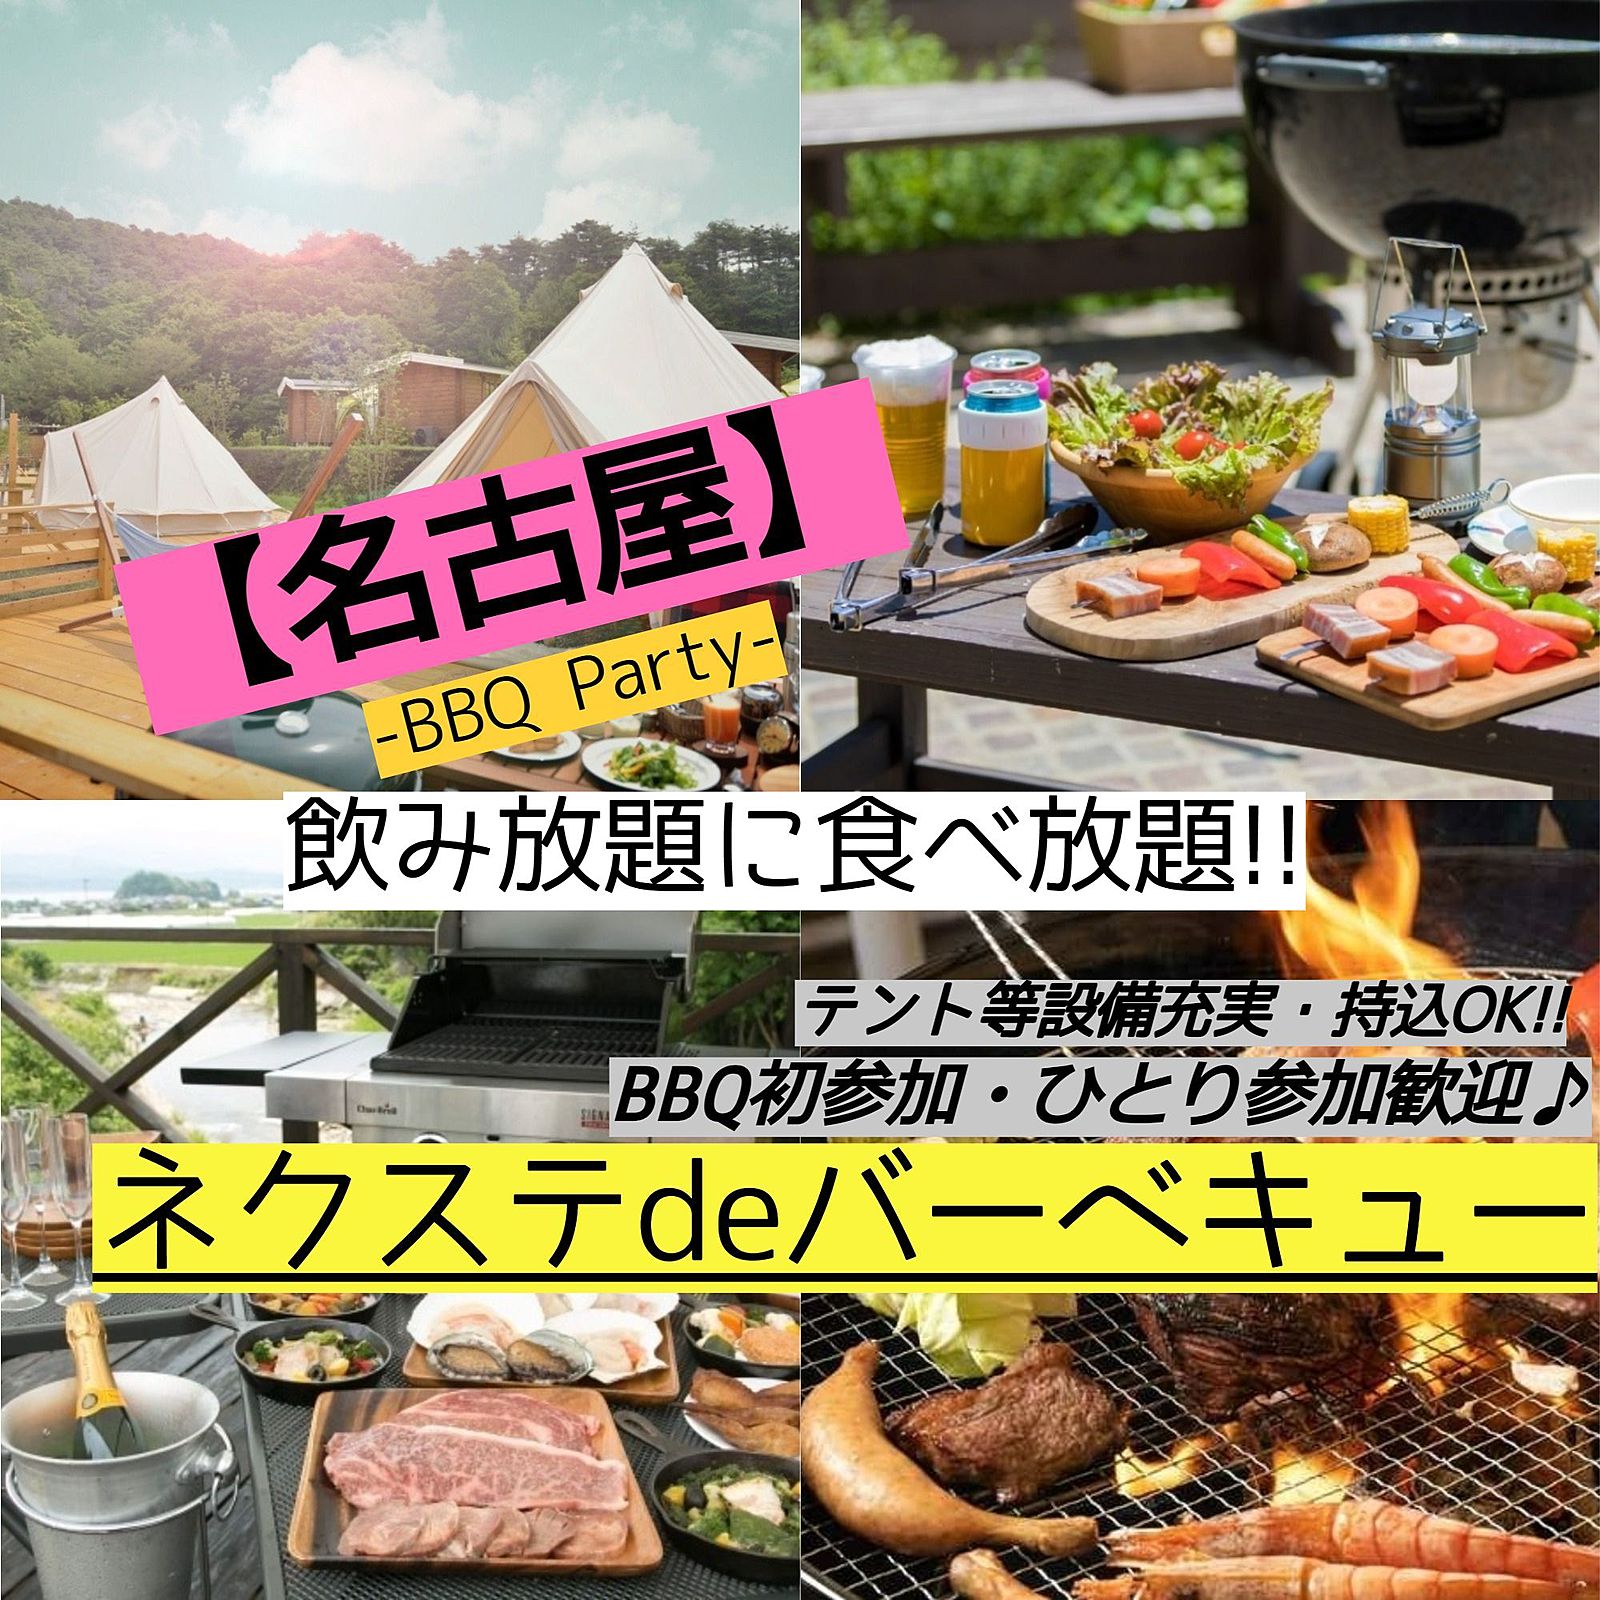 8月11日(祝日)【毎月2回開催・名古屋市内・BBQ】飲み・食べ放題!!素敵に本格的なBBQ♪【ネクステdeバーベキュー会】